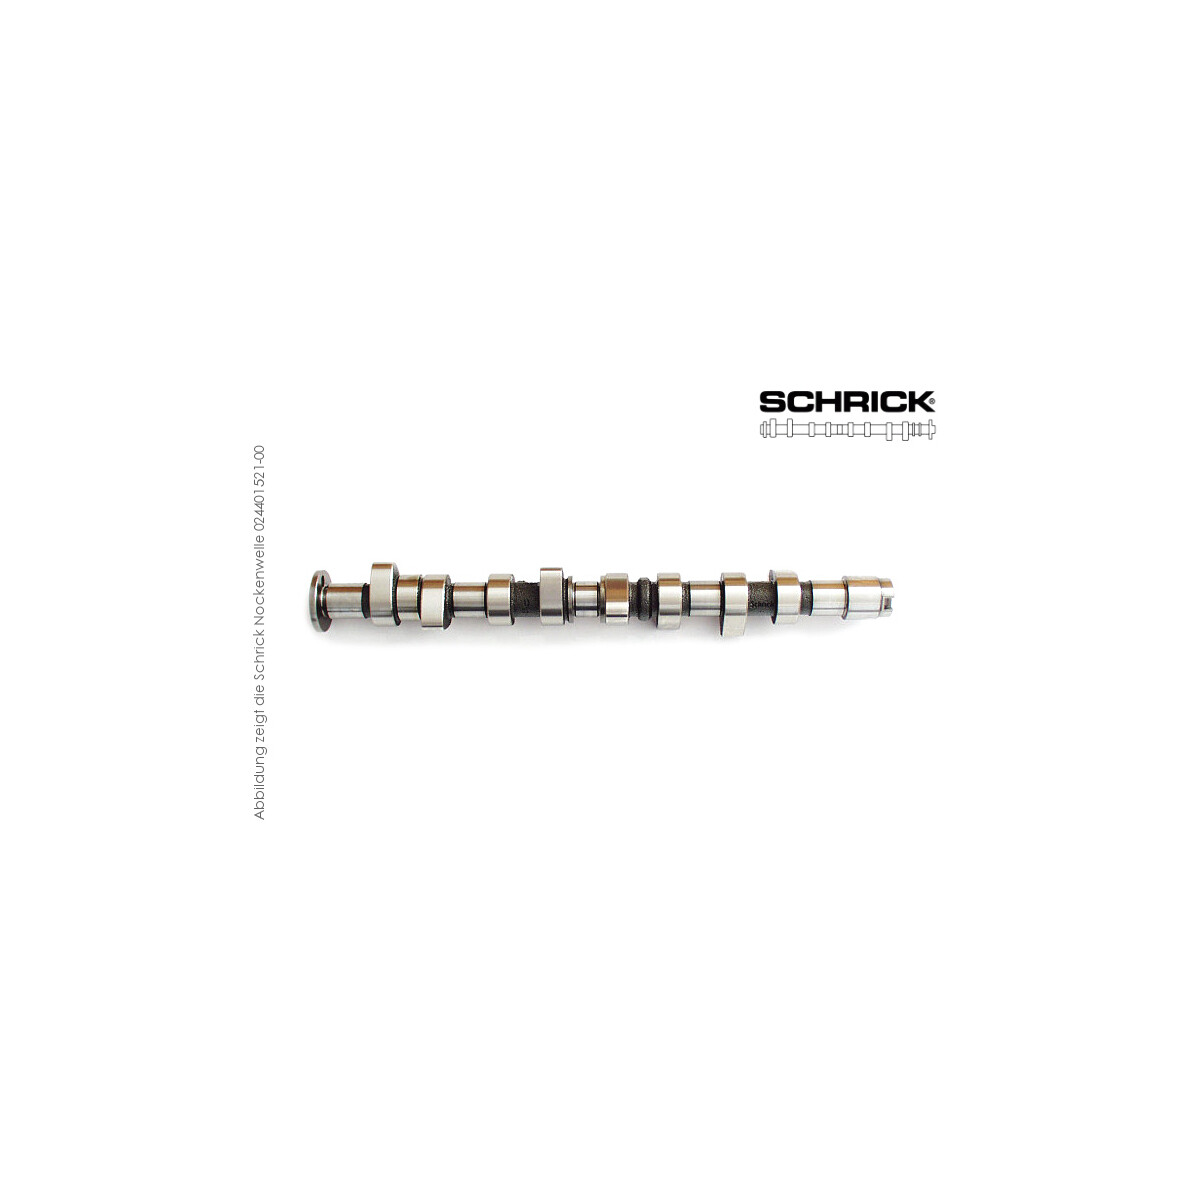 Schrick Nockenwelle für Audi 80, 90 | 1,5-2,0L 8V 4-Zyl. 827  | 272° Synchron (Schrick 001401721-02)